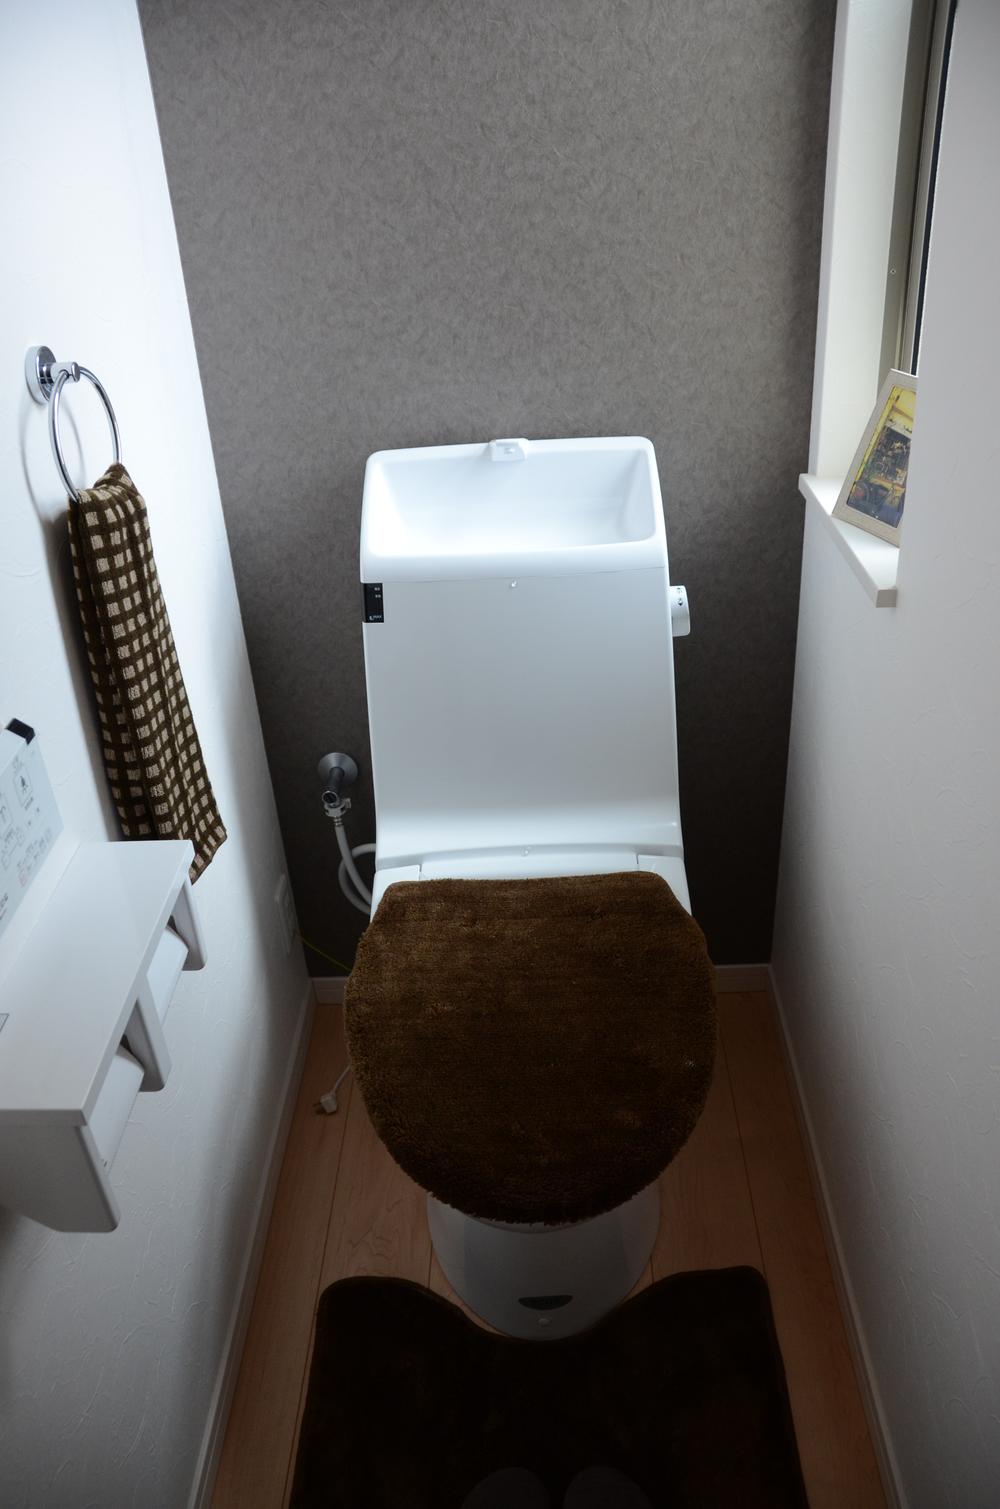 Toilet. Toilet water-saving eco-toilet